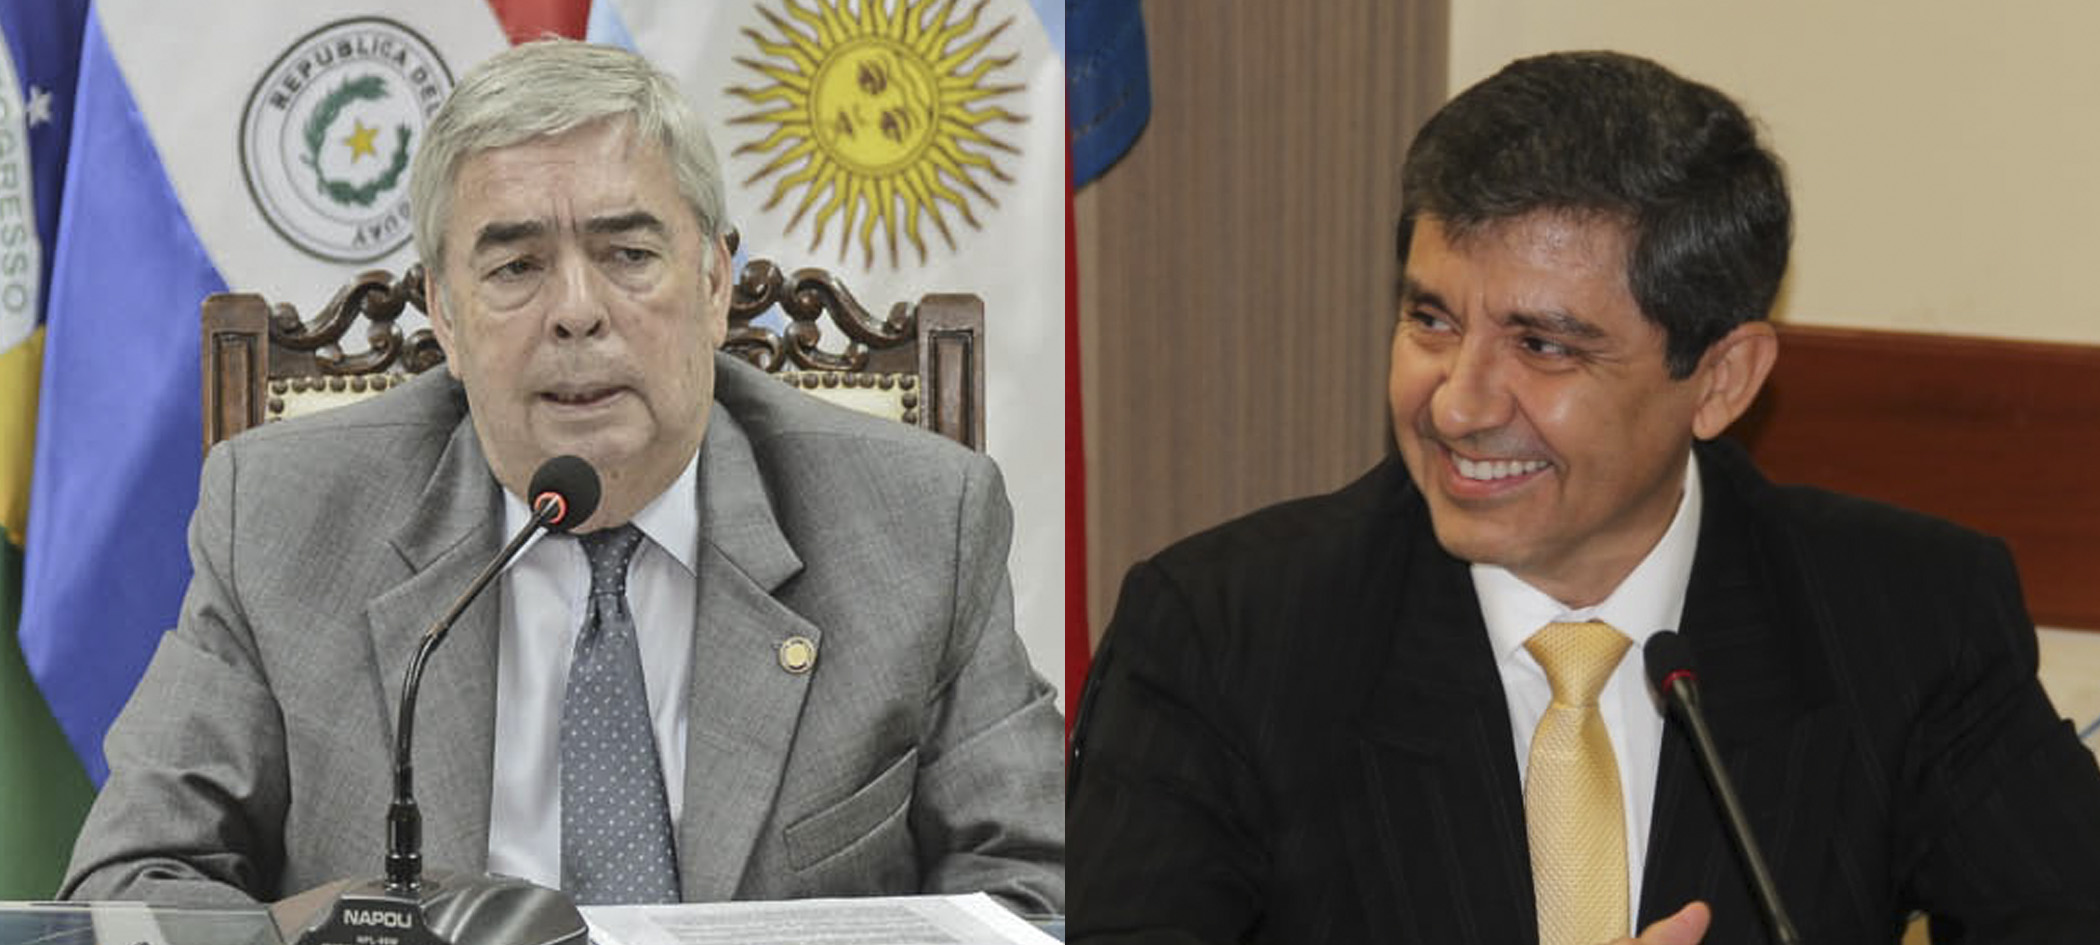 Senado otorgó acuerdo constitucional a embajadores Saguier y Facetti